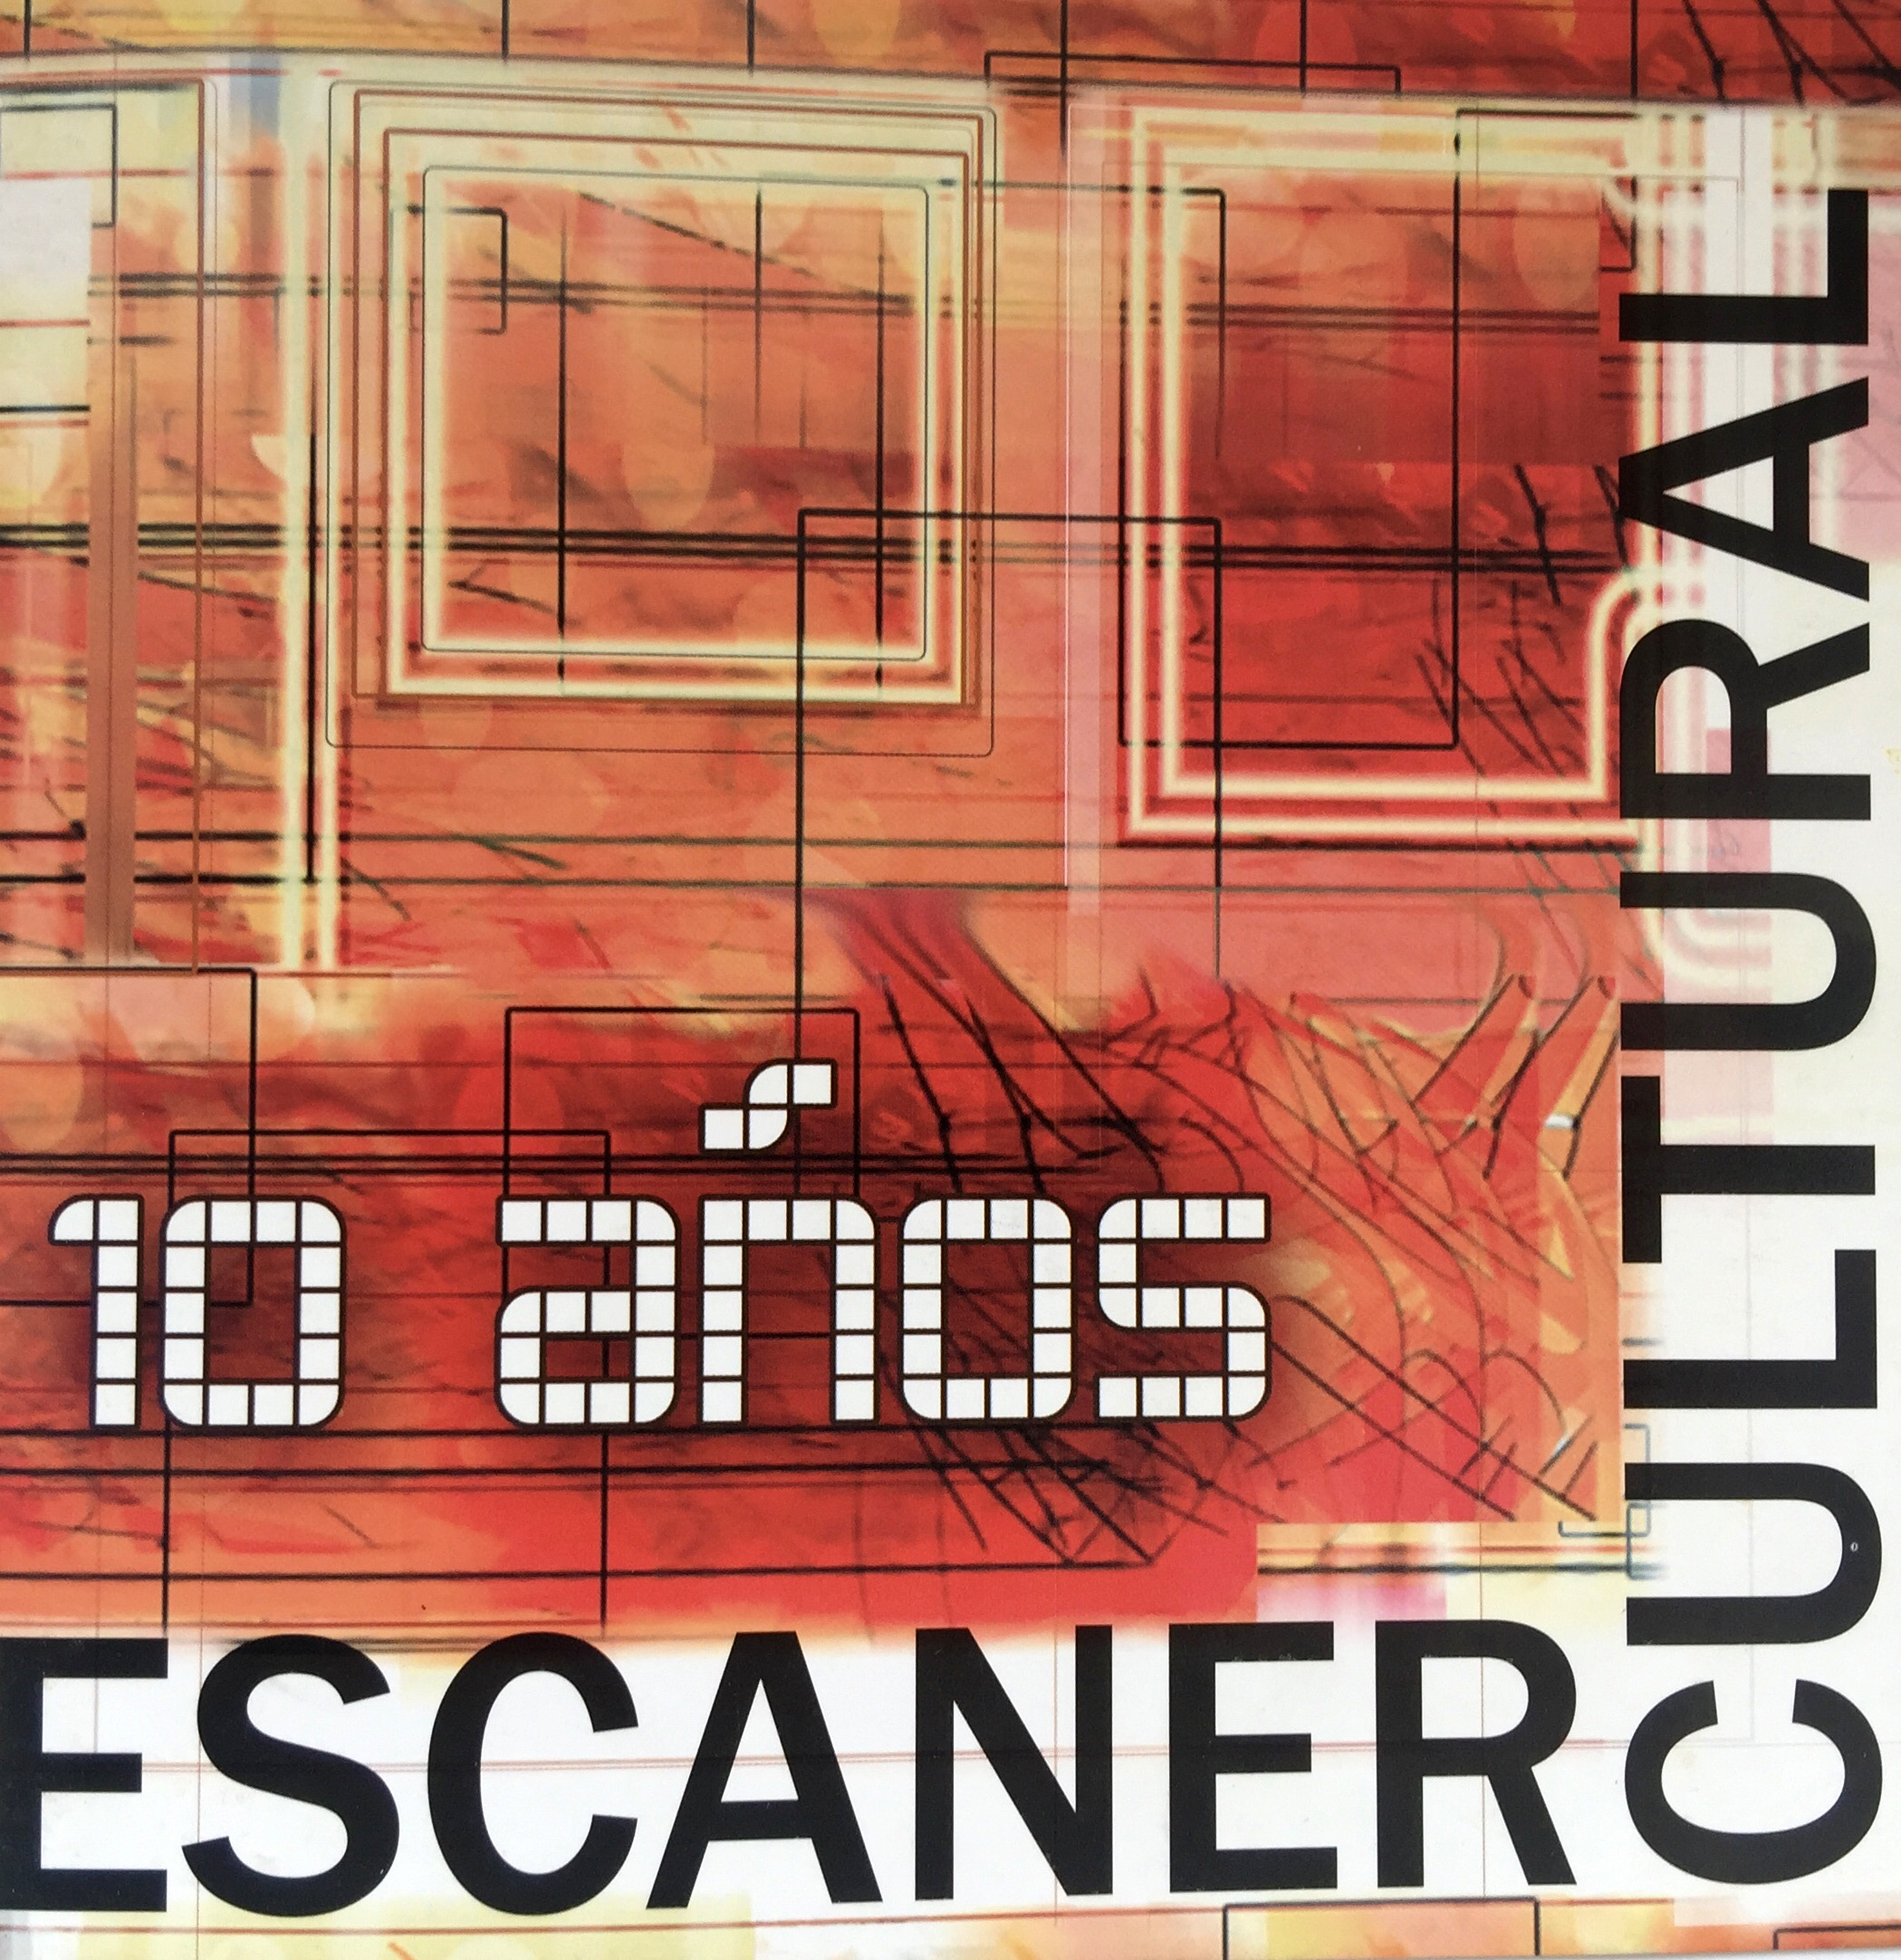 2009: Catálogo “Escaner Cultural”, conmemoración de los 10 Años de existencia en Galería Artium,.Santiago, Chile